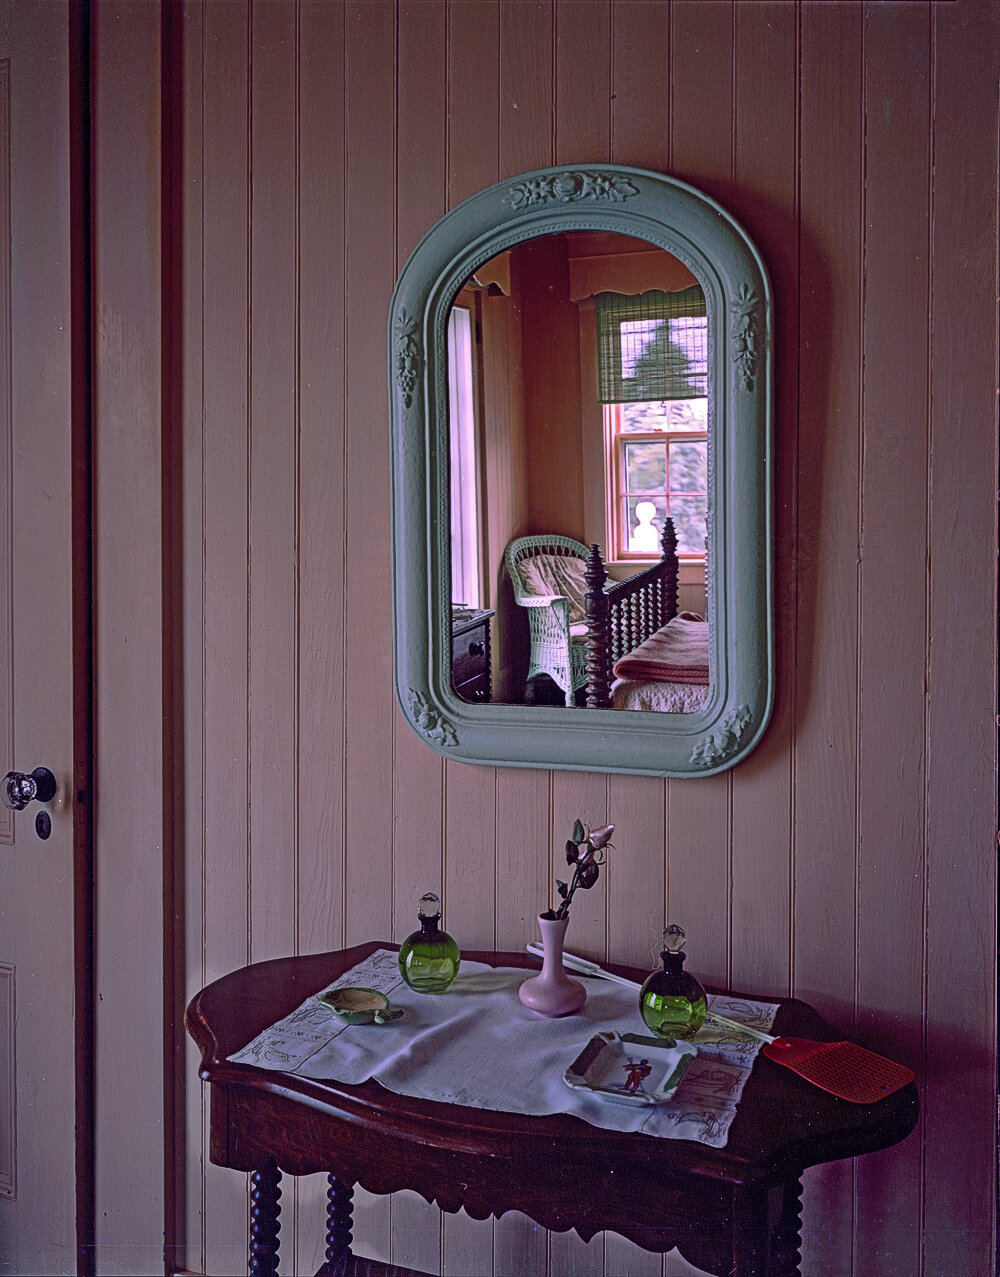 mirror marths vineyard 1980.jpg